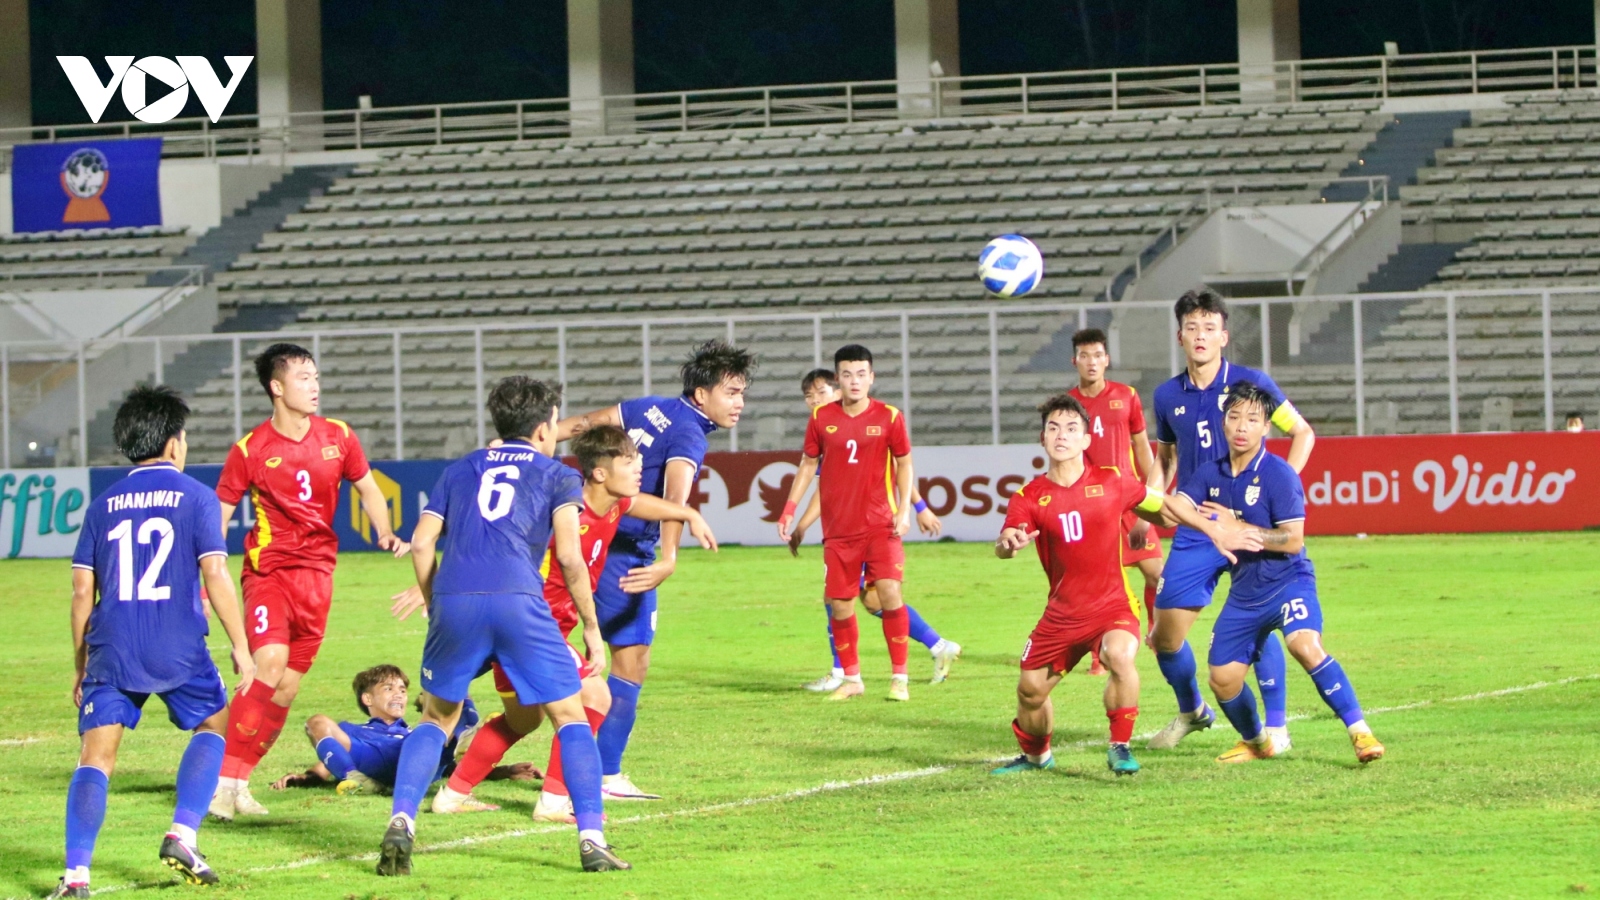 "U19 Thái Lan và U19 Việt Nam cùng thất bại để giữ Indonesia ở lại AFF"